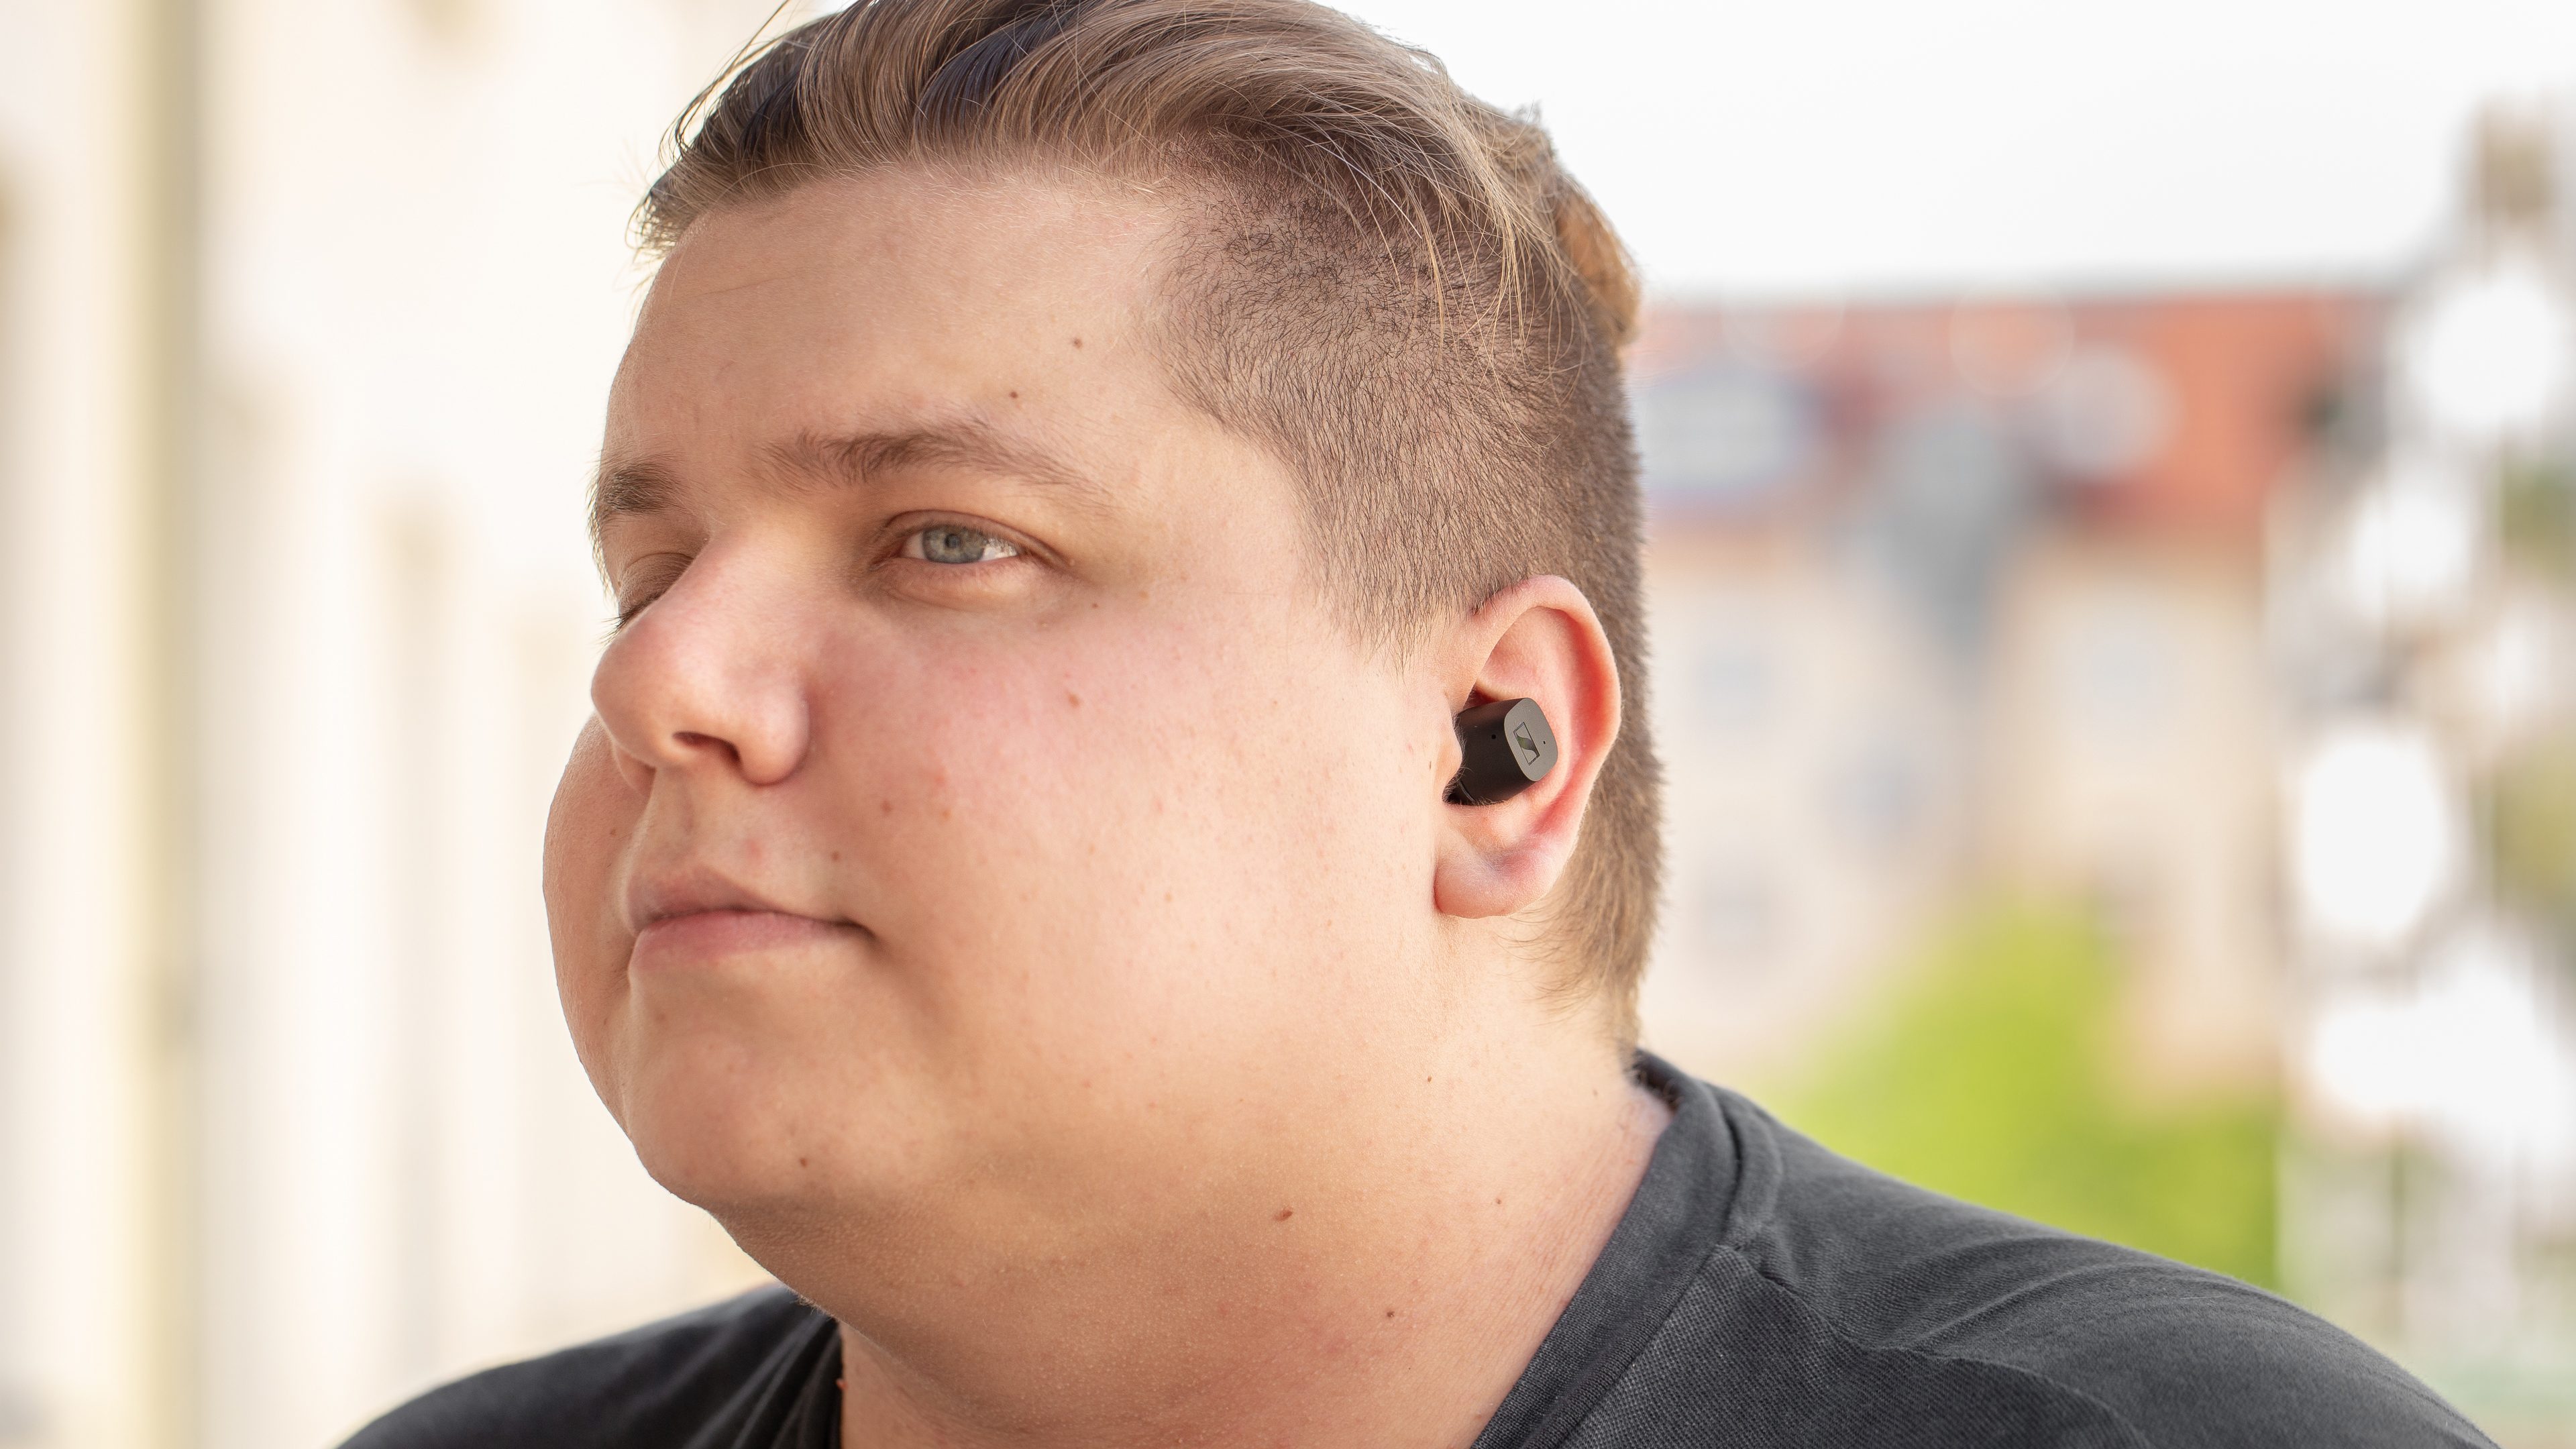 Sennheiser CX True Wireless review: Zero bullshit headphones for